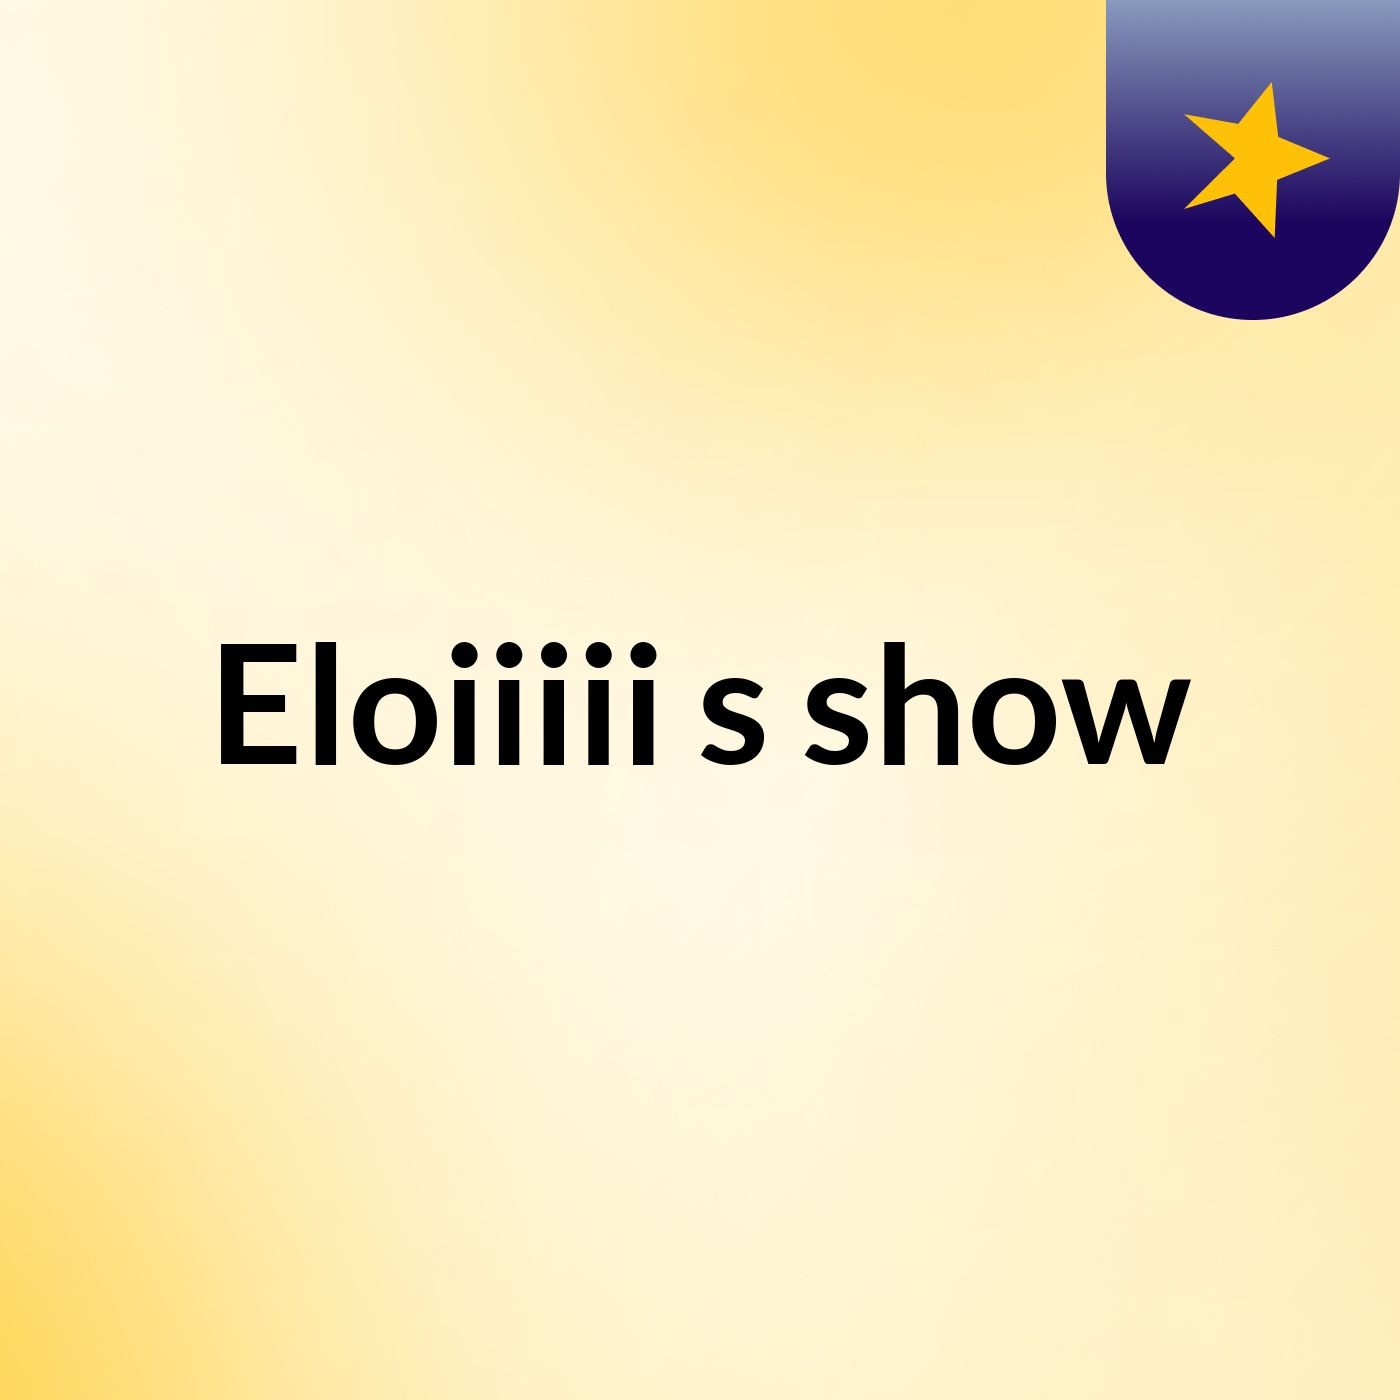 Eloiiiii's show